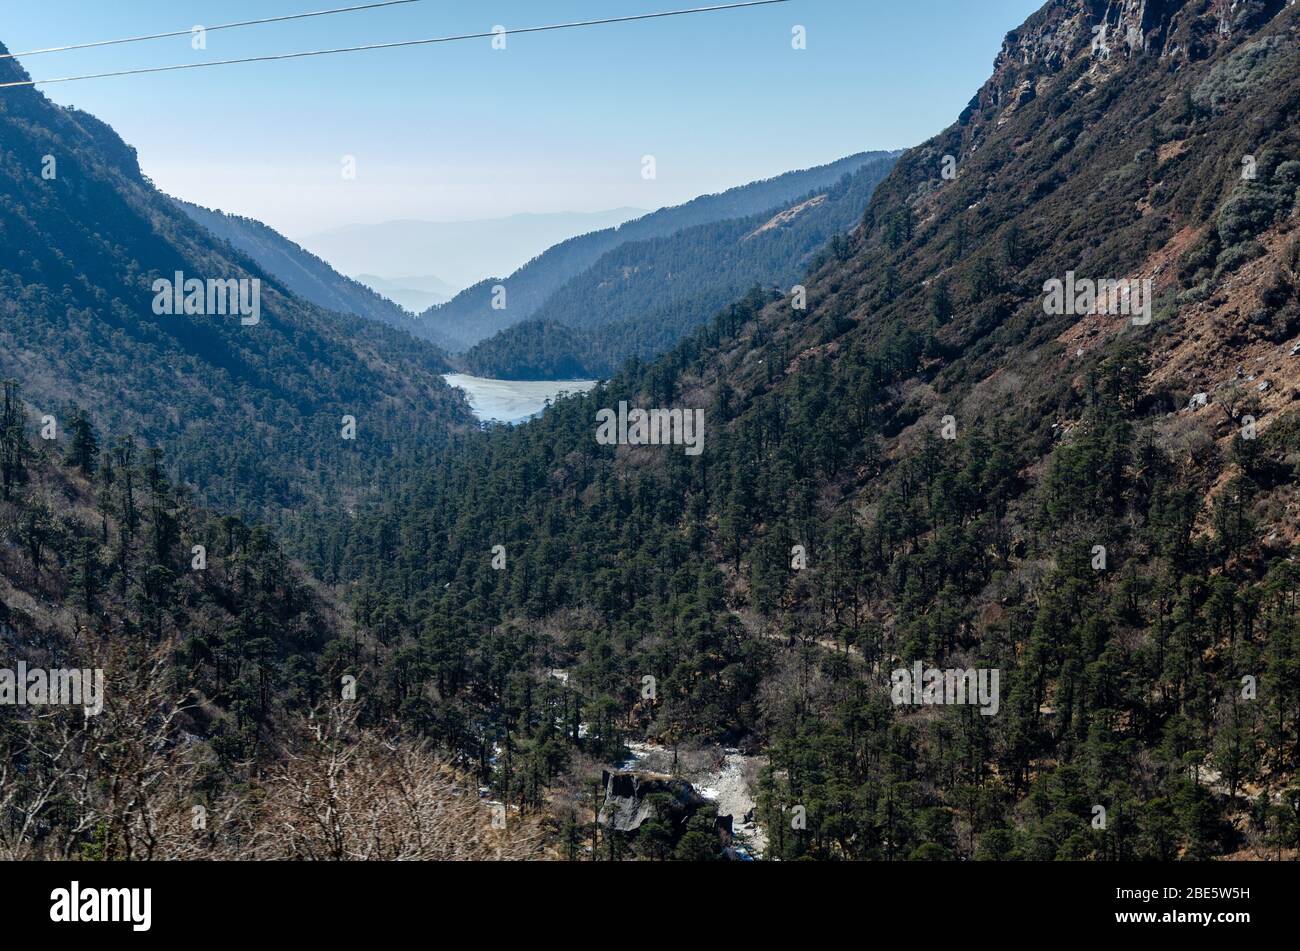 Belle vue sur le paysage montagneux et la vallée sous-jacente lors de votre voyage sur Nathu la Pass, Sikkim, Inde Banque D'Images